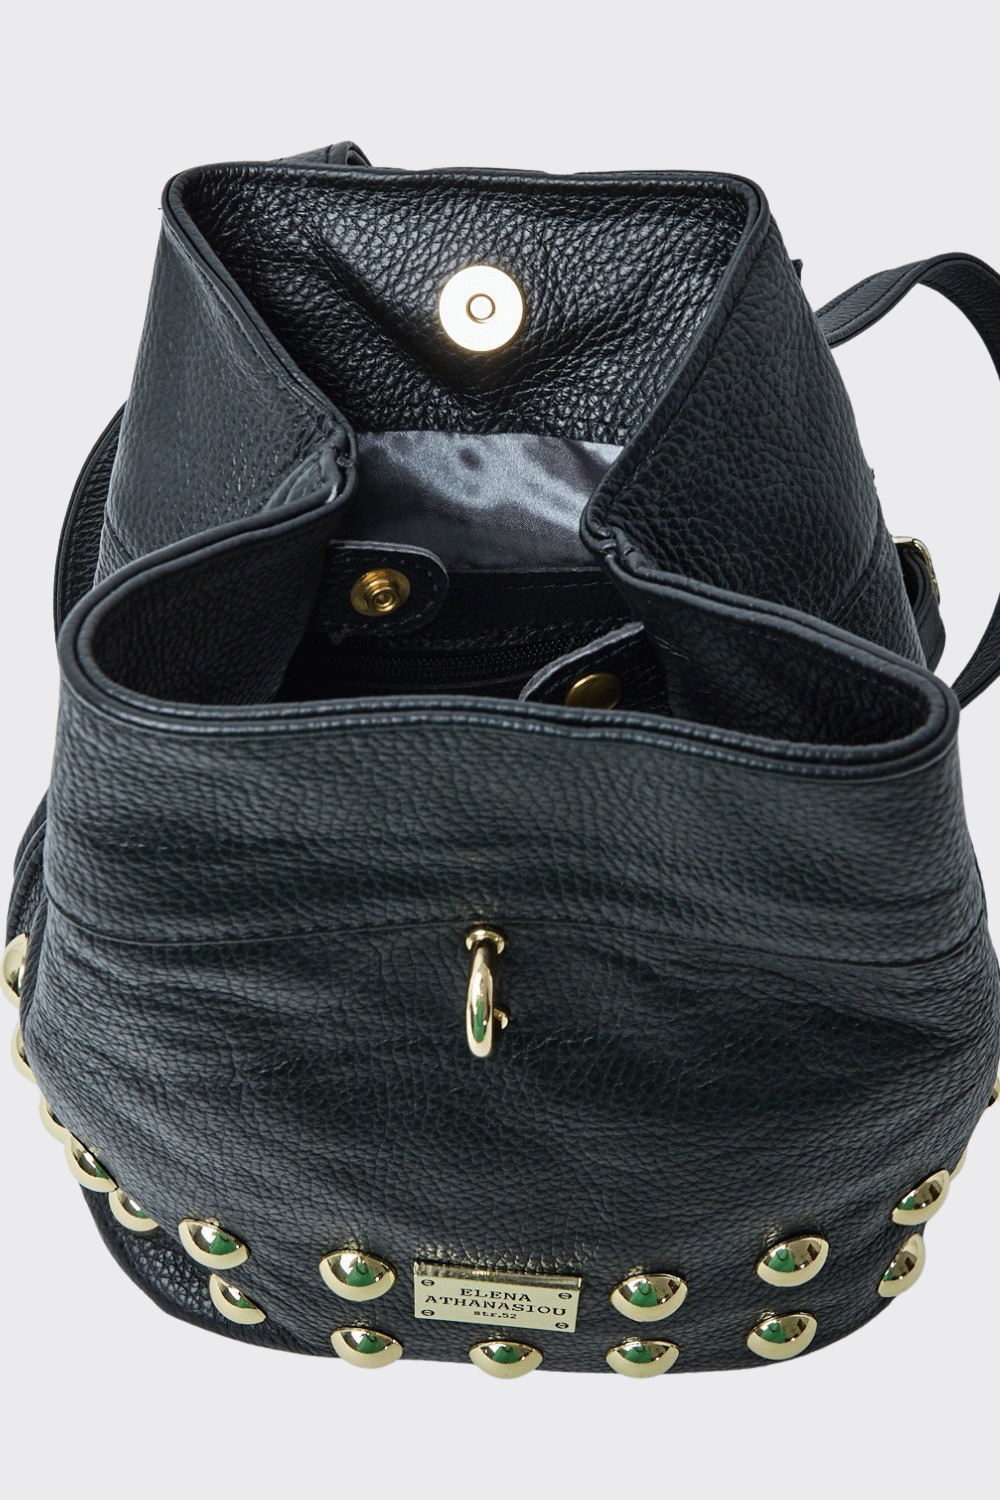 Black N’ Metal Mini Backpack Black